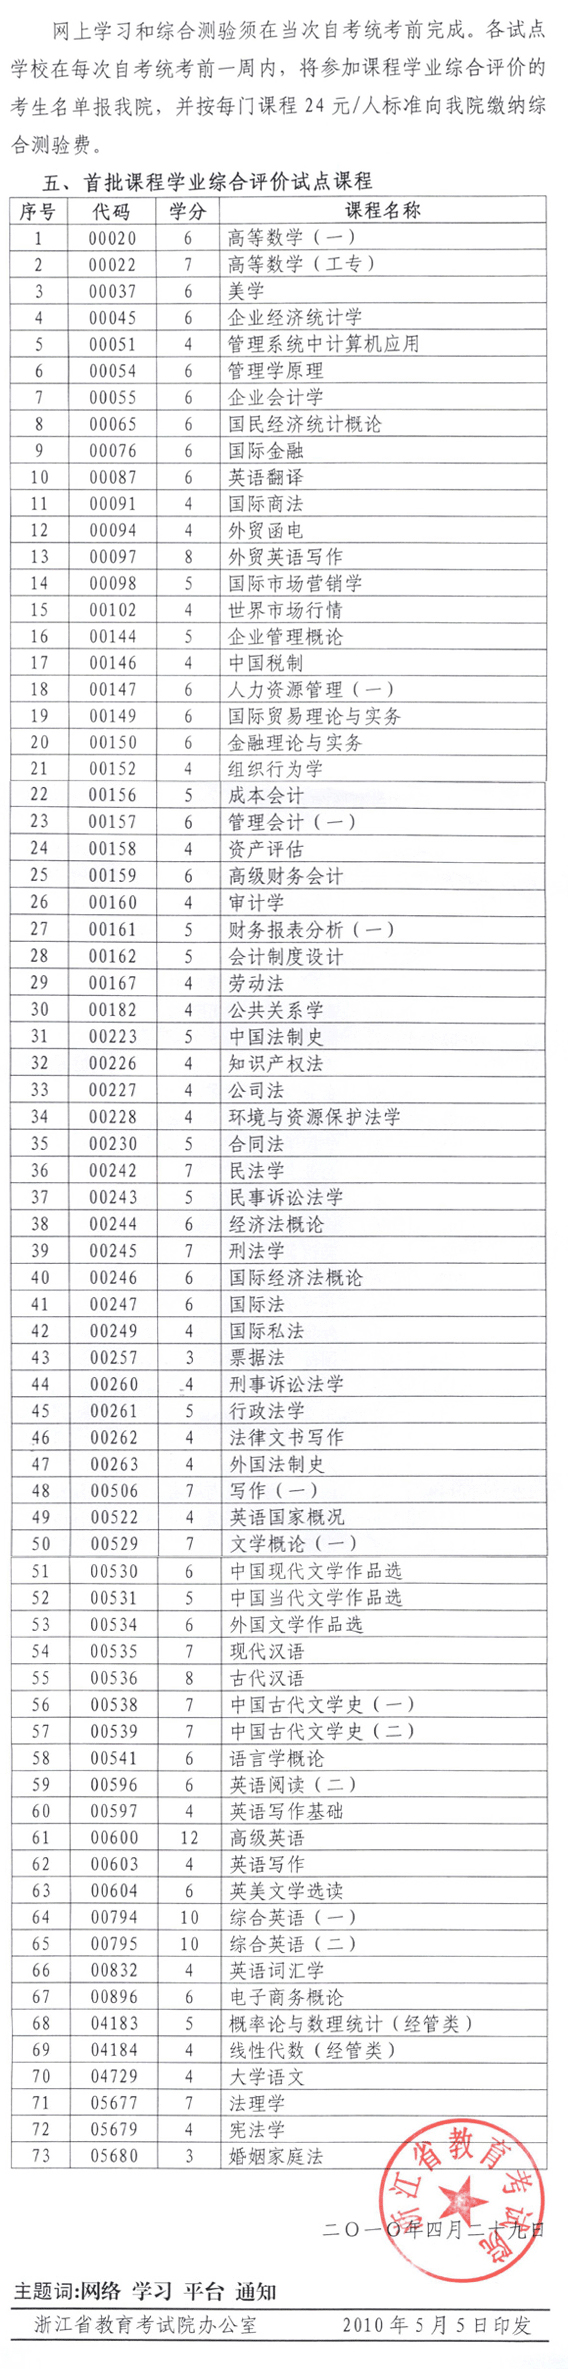 浙江省建立自学考试网络助学平台的通知2